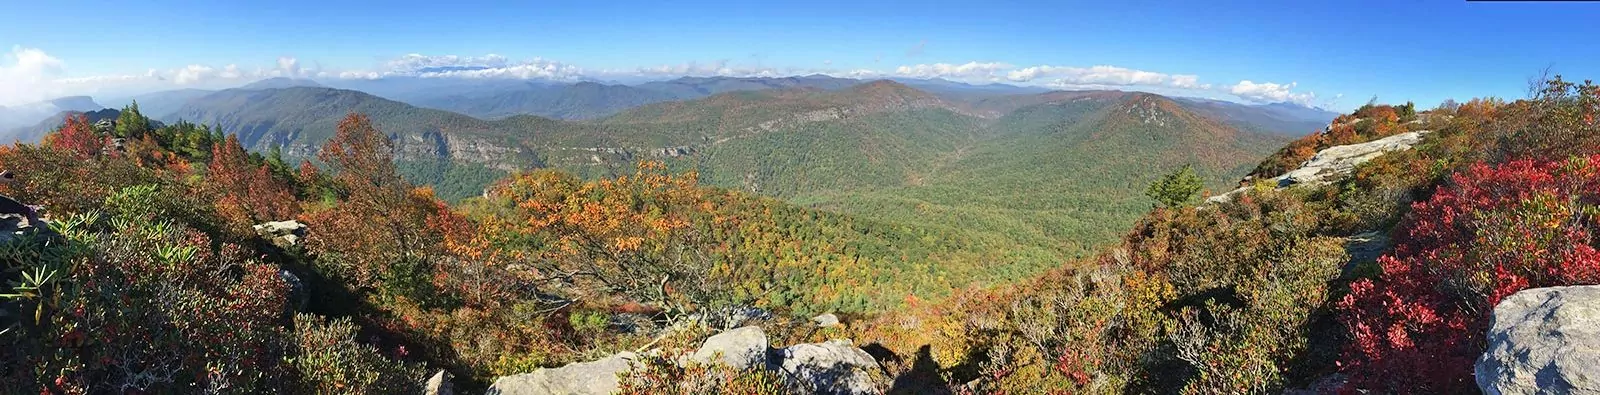 Stunning mountain vista near Asheville, North Carolina